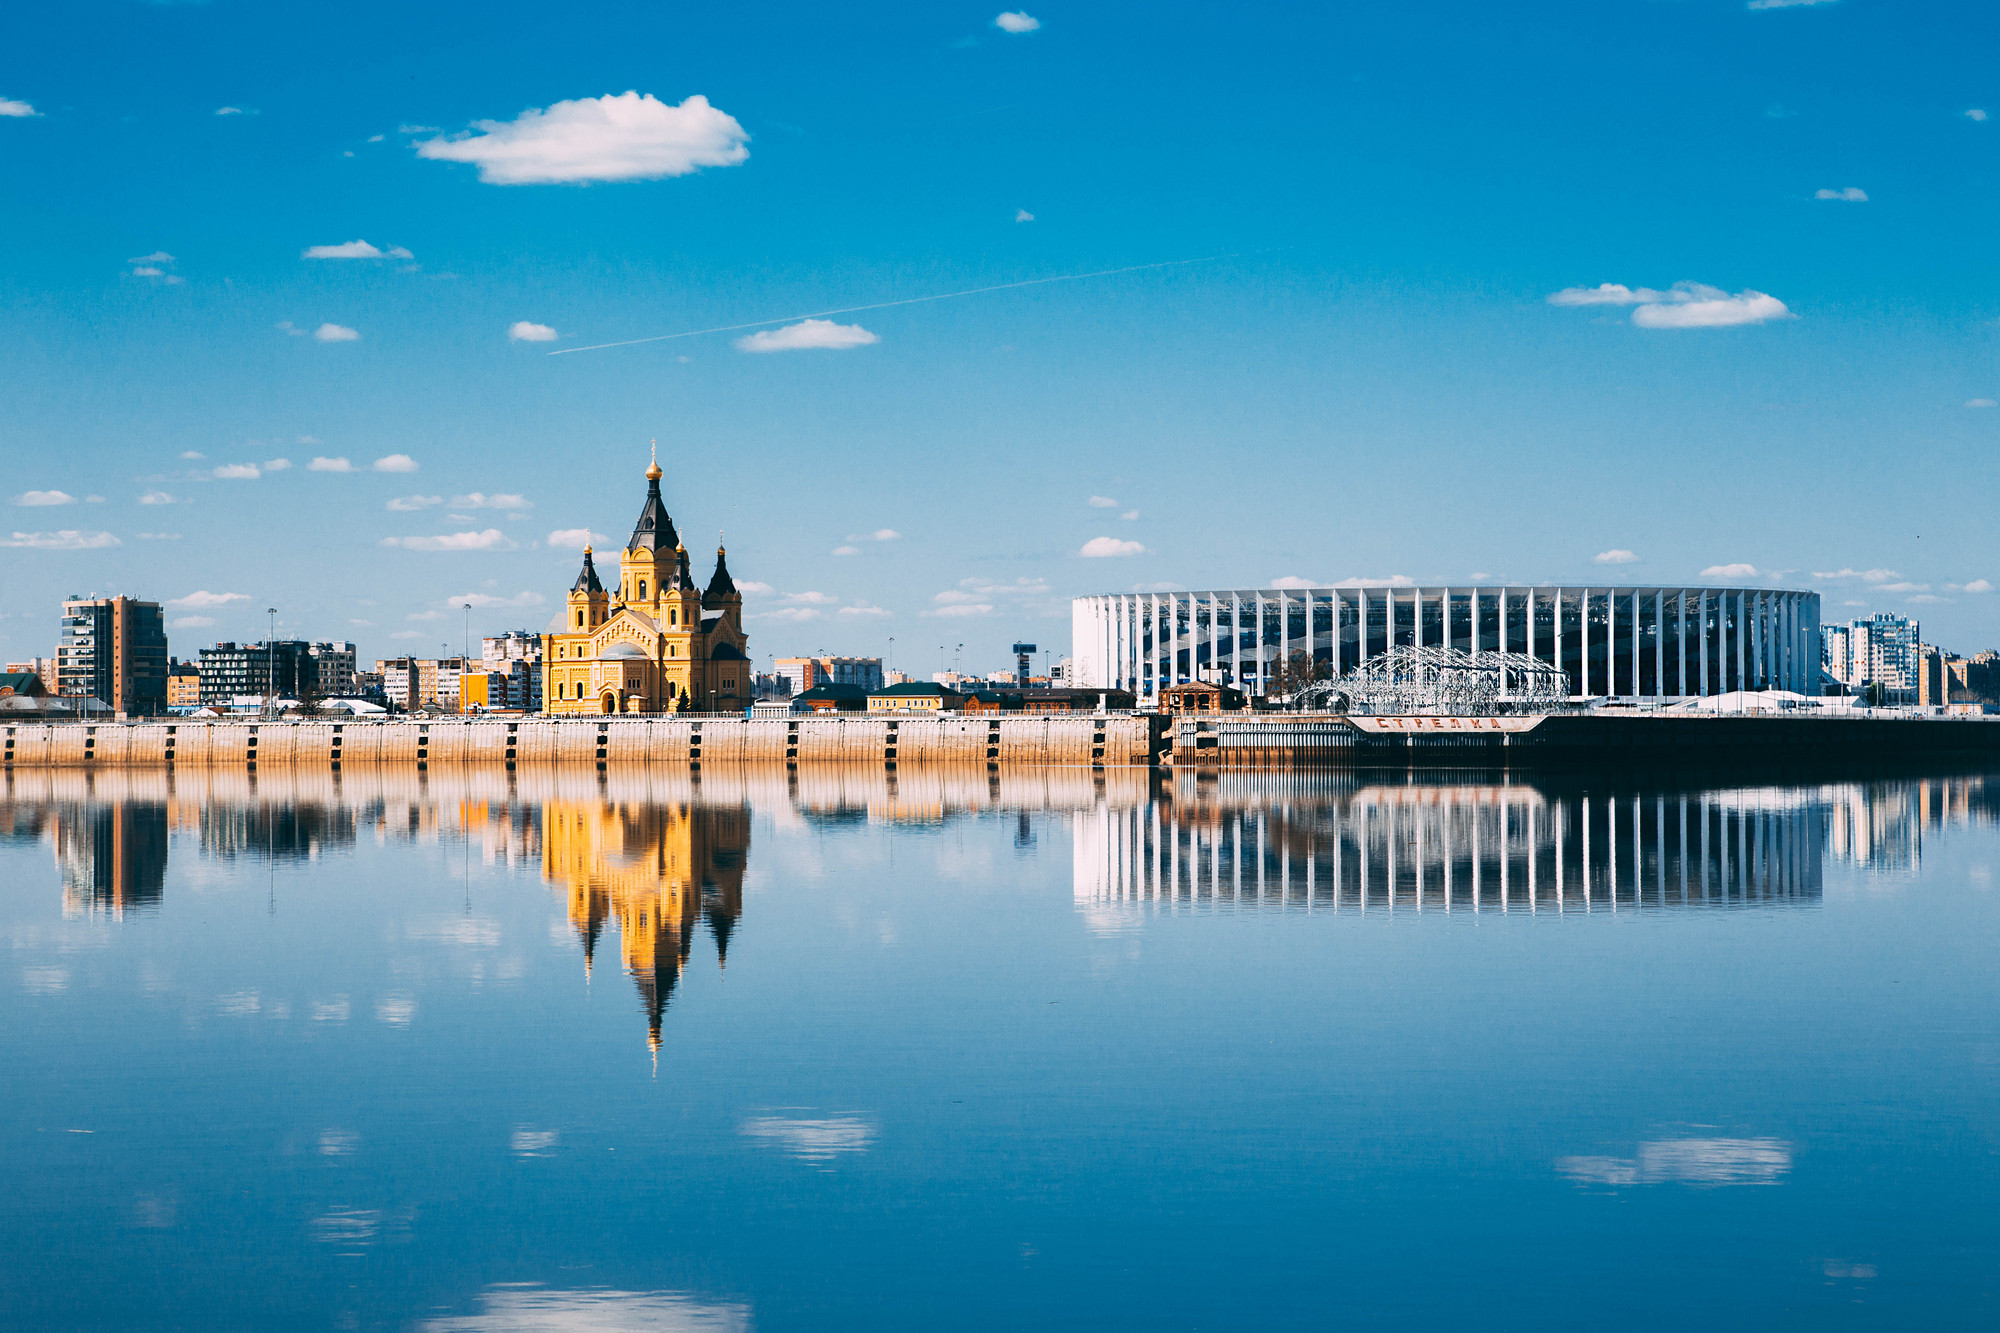 Панорама Стрелки Оки и Волги (чаще просто Стрелка) — одной из главных природных достопримечательностей в историческом центре Нижнего Новгорода. Находится на месте слияния рек Оки и Волги